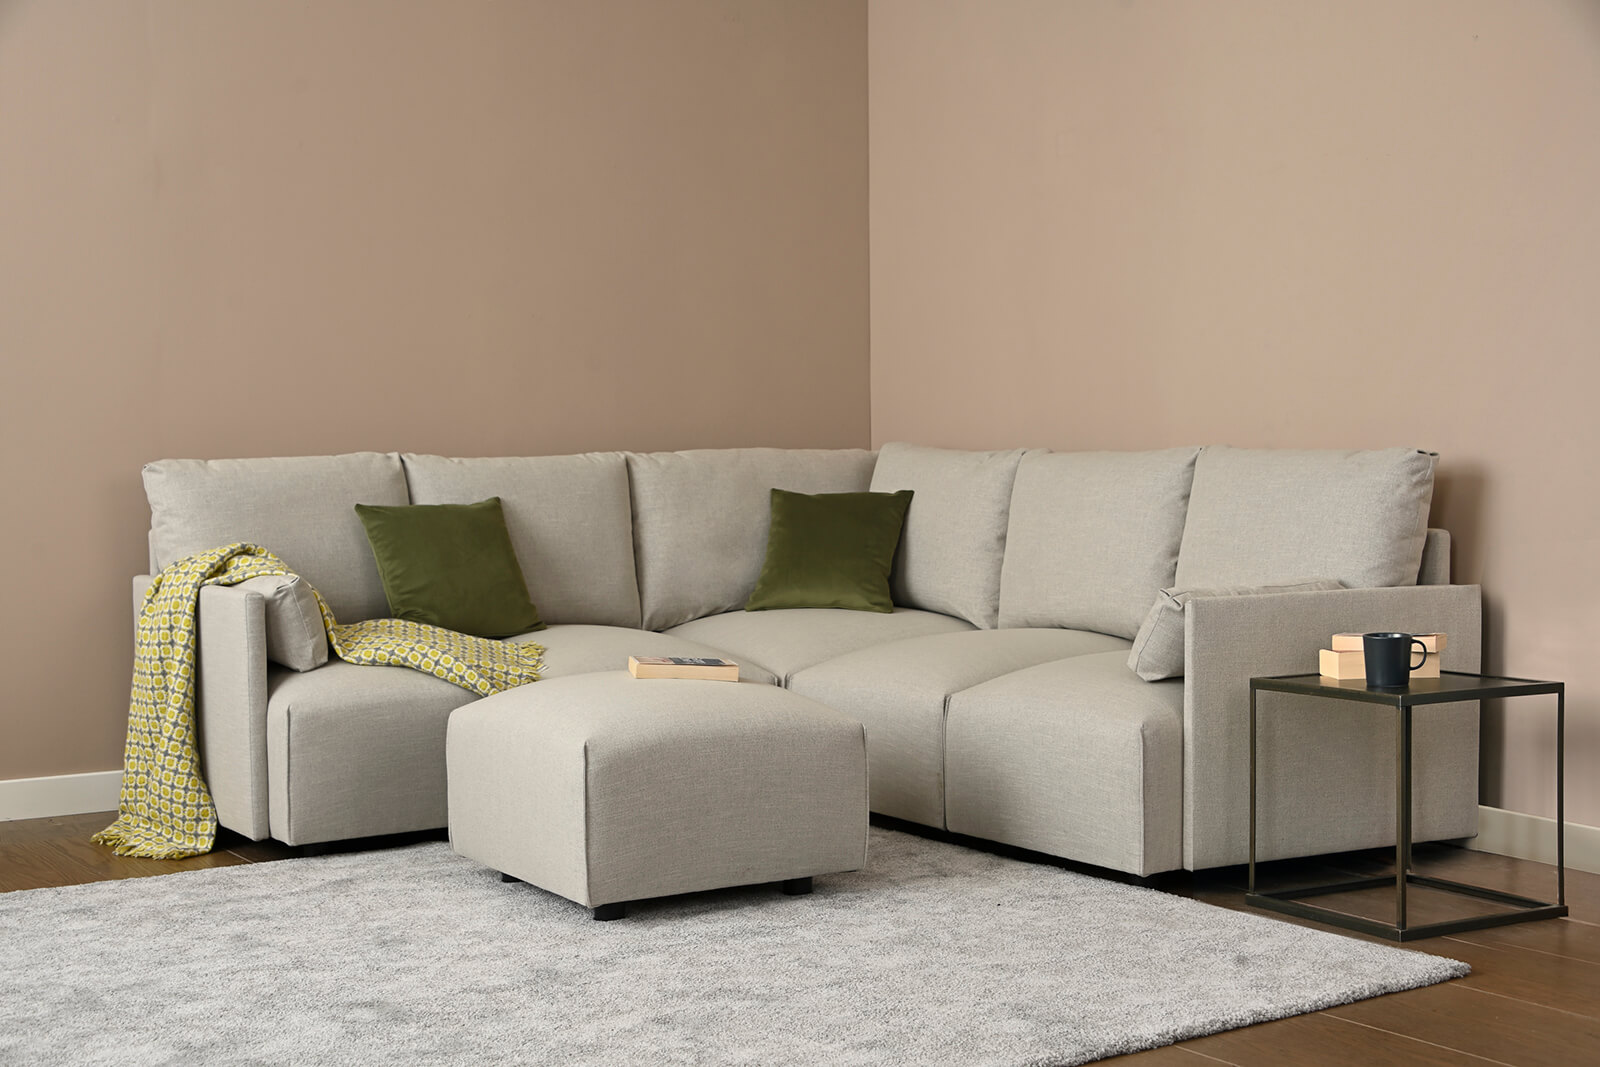 HB04-medium-corner-sofa-footstool-3q-coconut-3x3-lifestyle